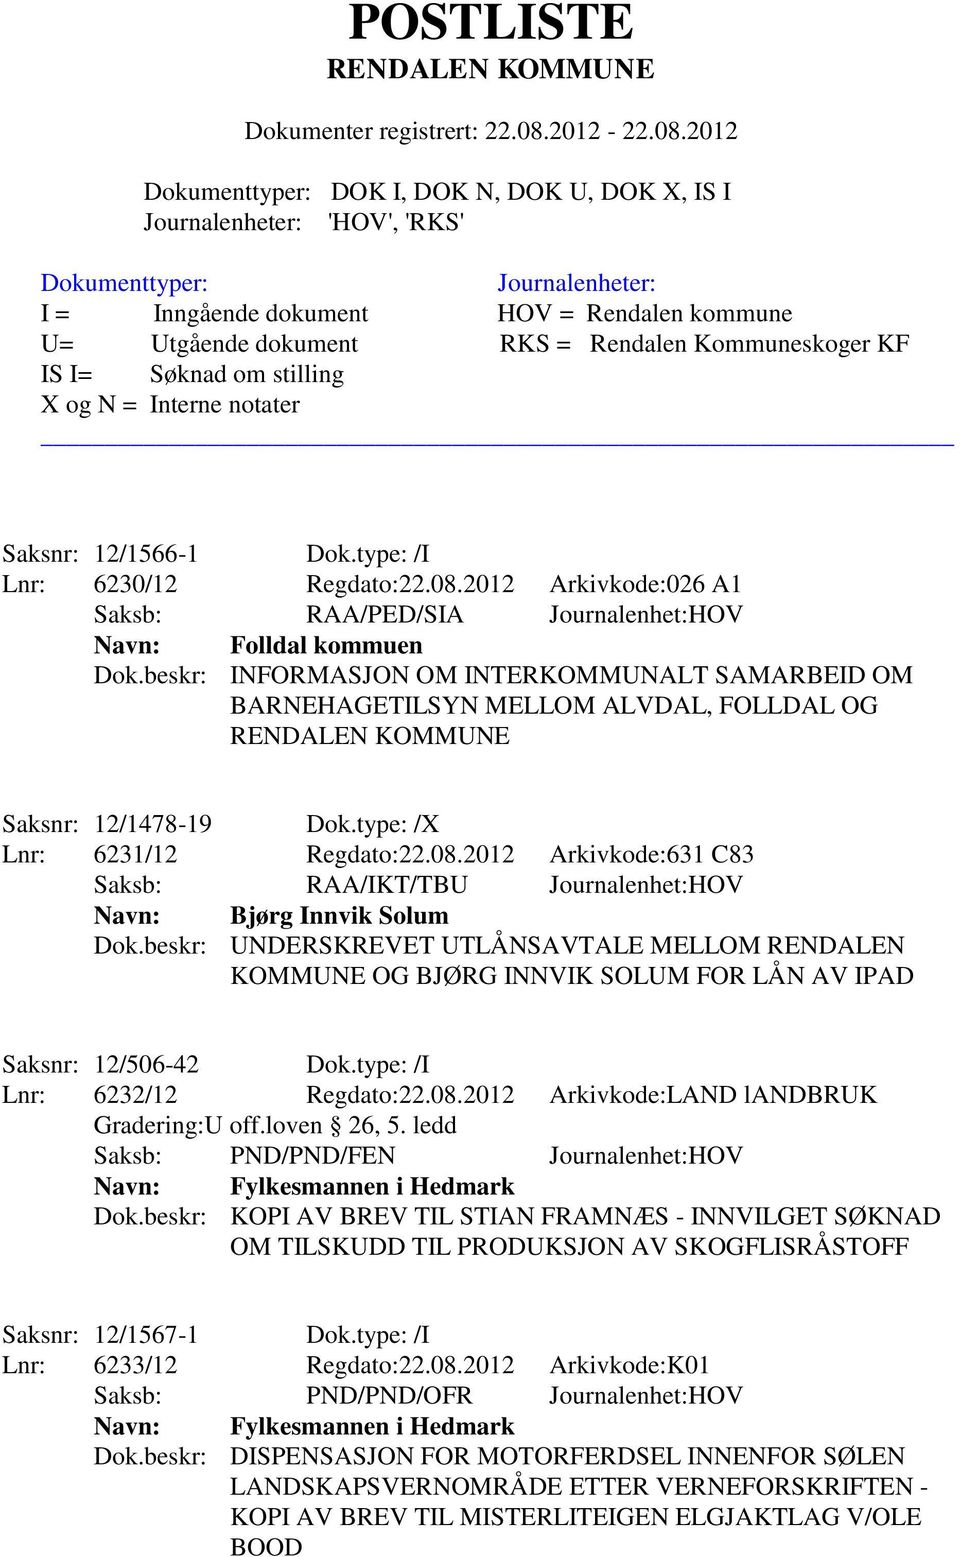 2012 Arkivkode:631 C83 Saksb: RAA/IKT/TBU Journalenhet:HOV Navn: Bjørg Innvik Solum Dok.